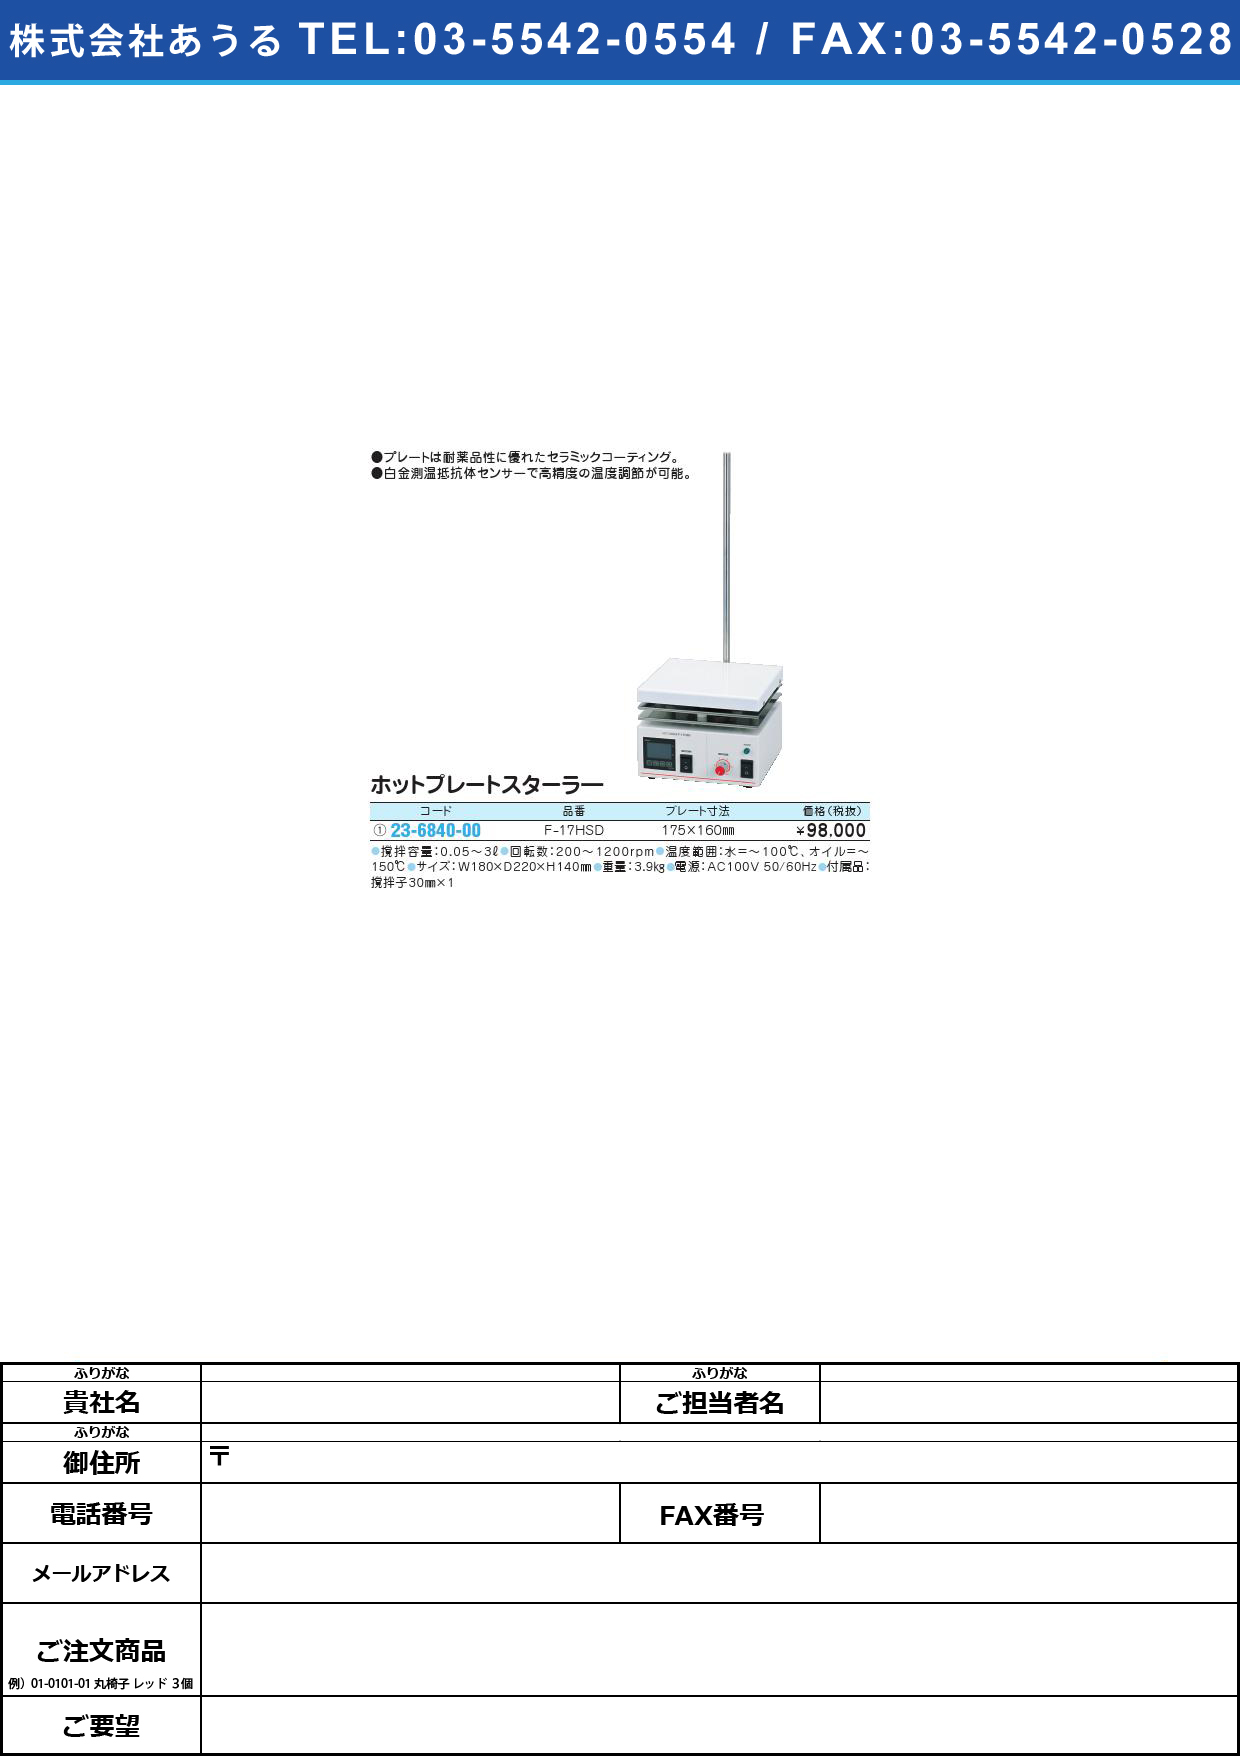 ホットプレートスターラー F-17HSDﾎｯﾄﾌﾟﾚｰﾄｽﾀｰﾗｰ(23-6840-00)【1台単位】【2013年カタログ商品】